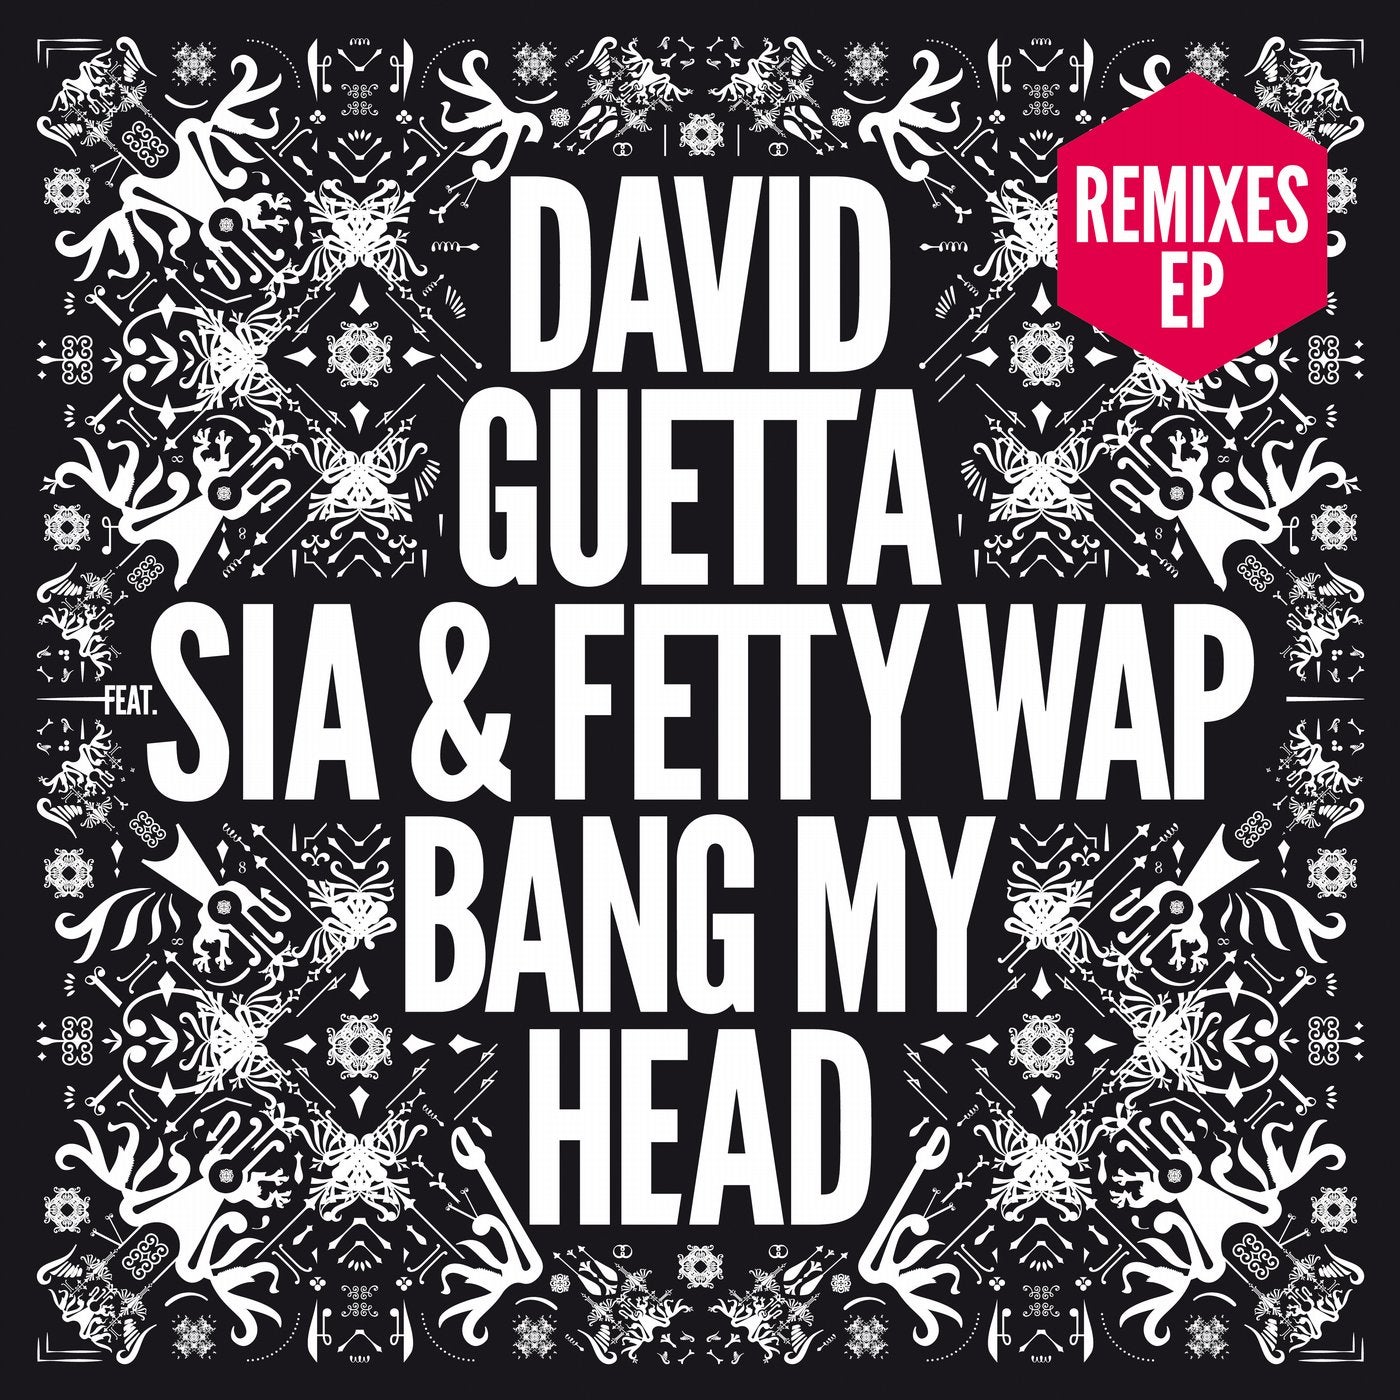 Bang My Head Remixes EP